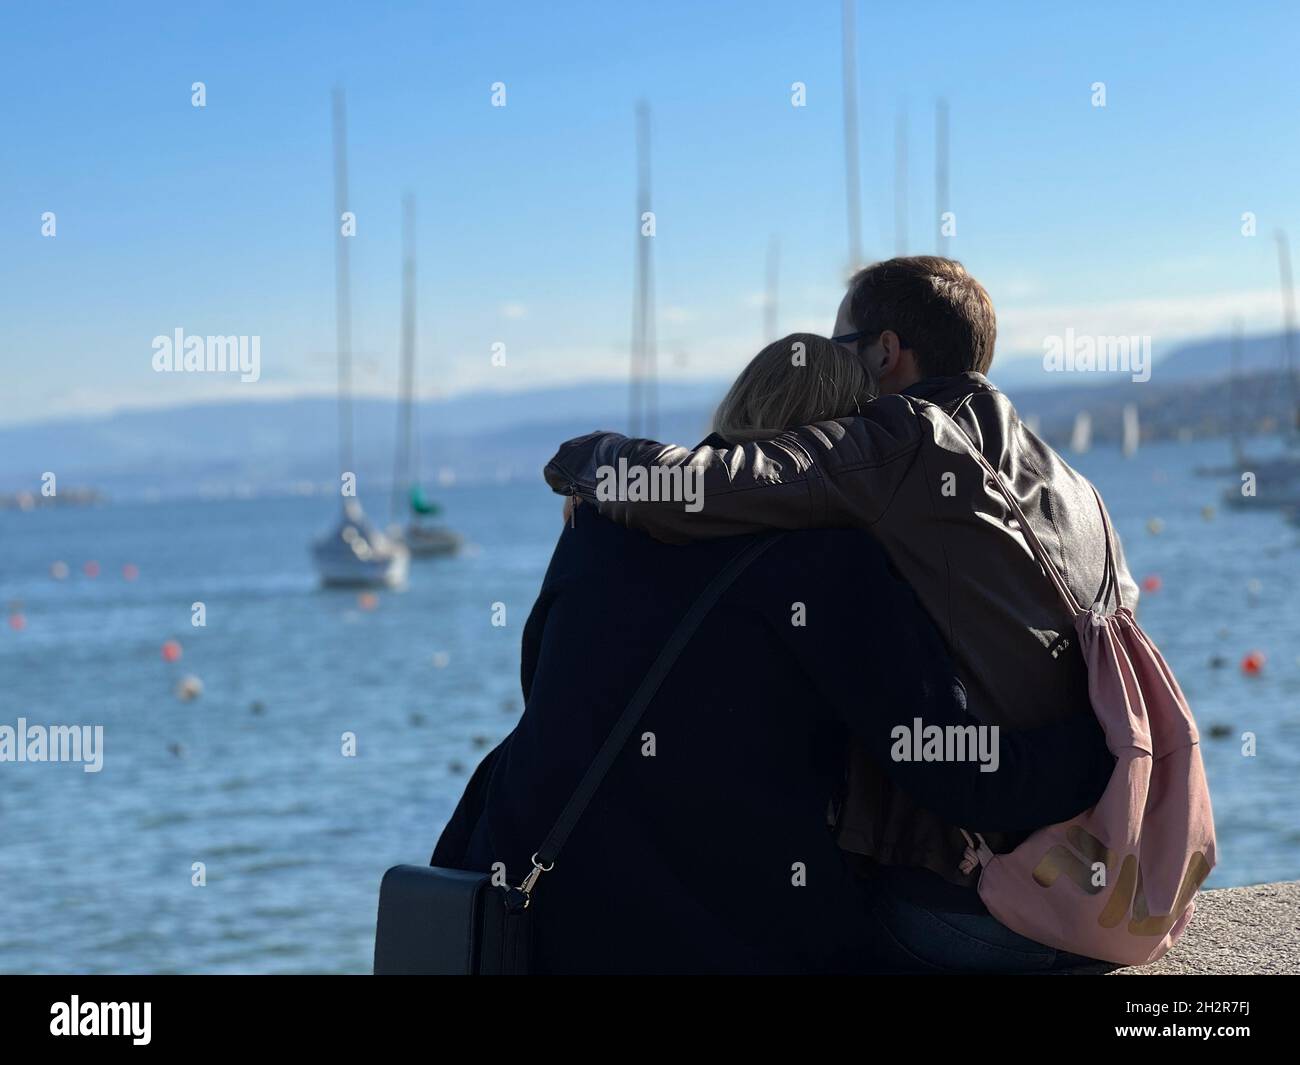 Les jeunes couples hétérosexuels se cuddling ensemble dans la vue arrière.Ils sont assis sur une barrière de béton observant le lac de Zurich avec des bateaux dessus. Banque D'Images